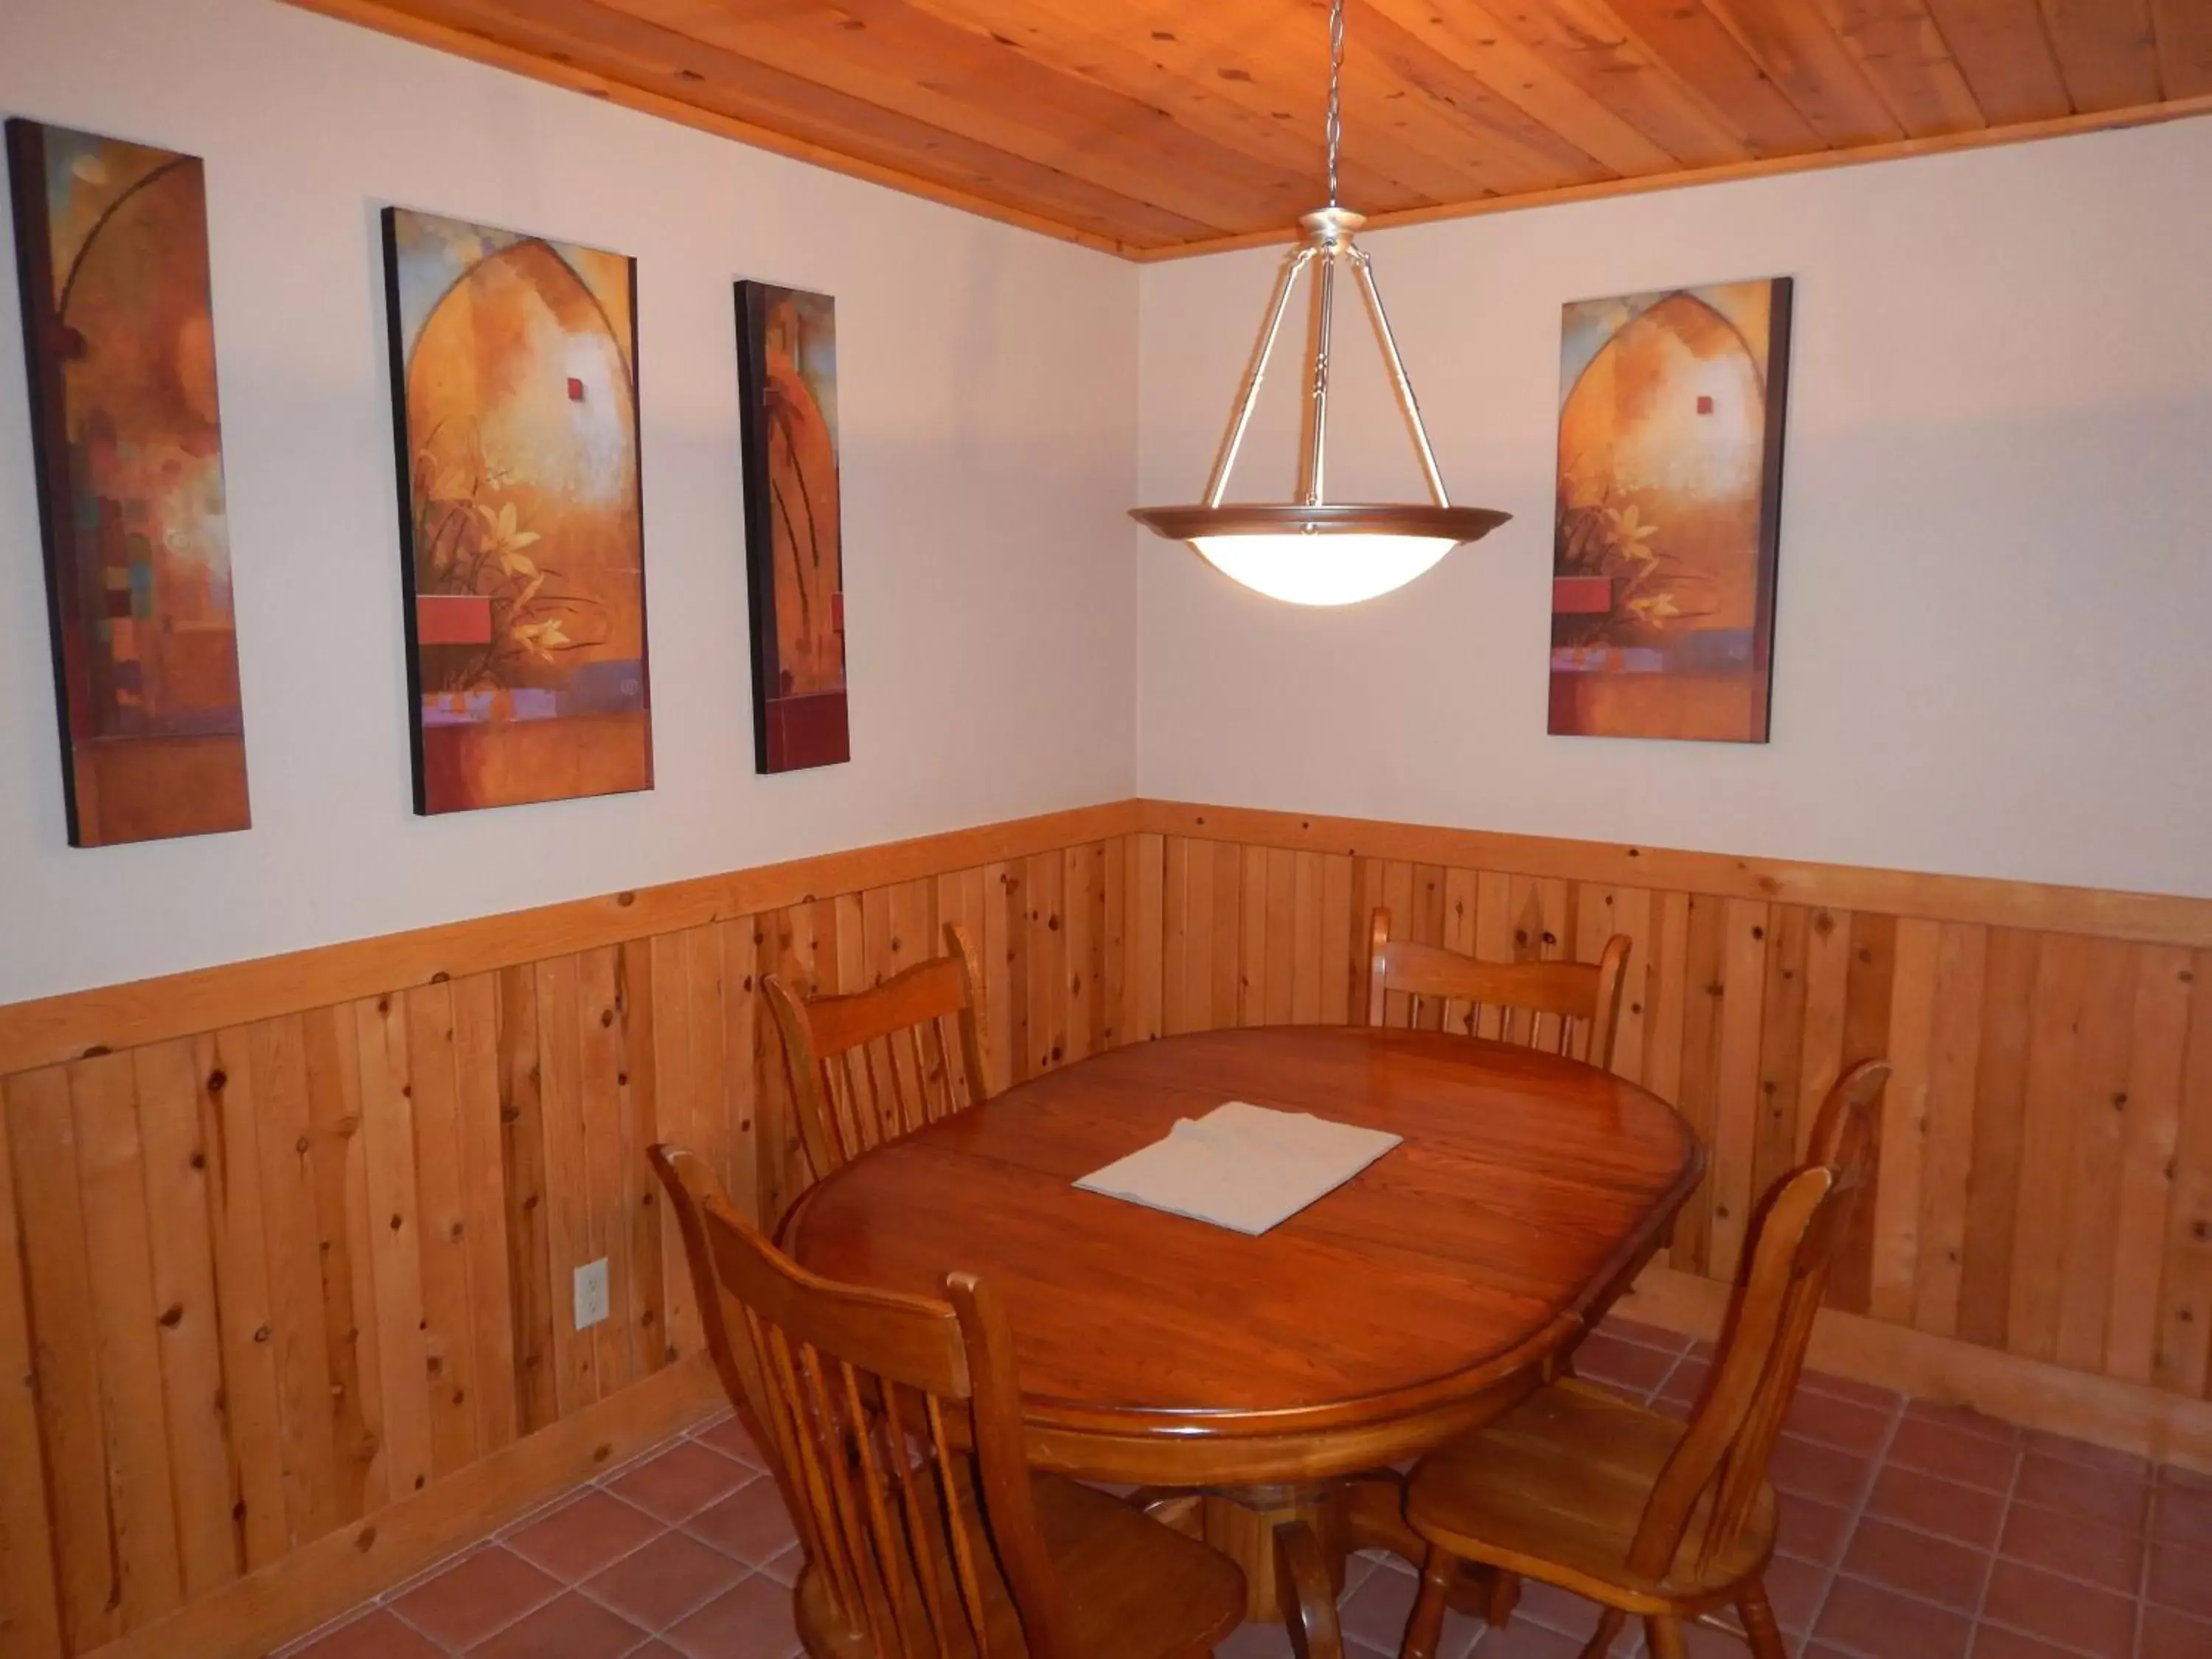 Dining Area in Mount Shasta Resort